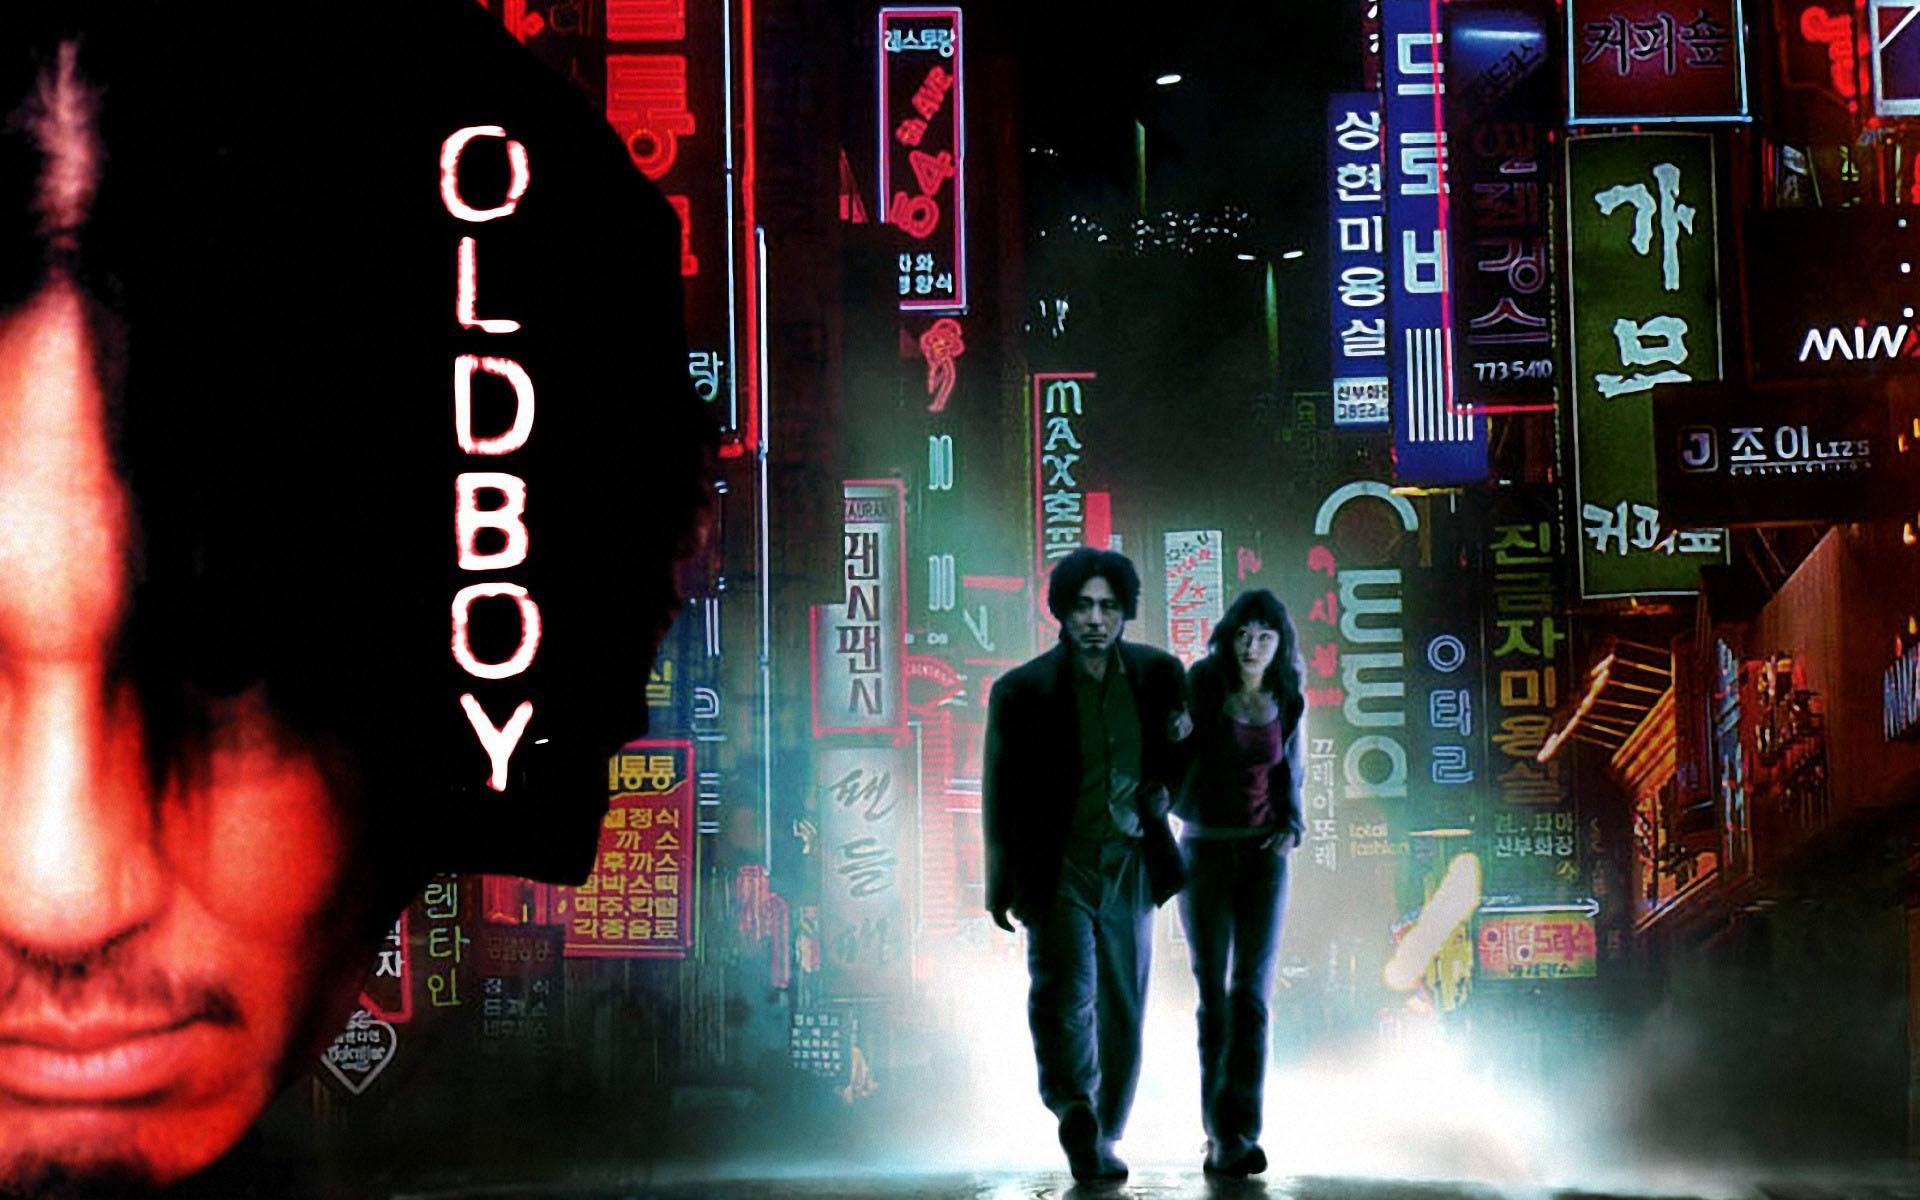 Oldboy (2003) Wallpapers